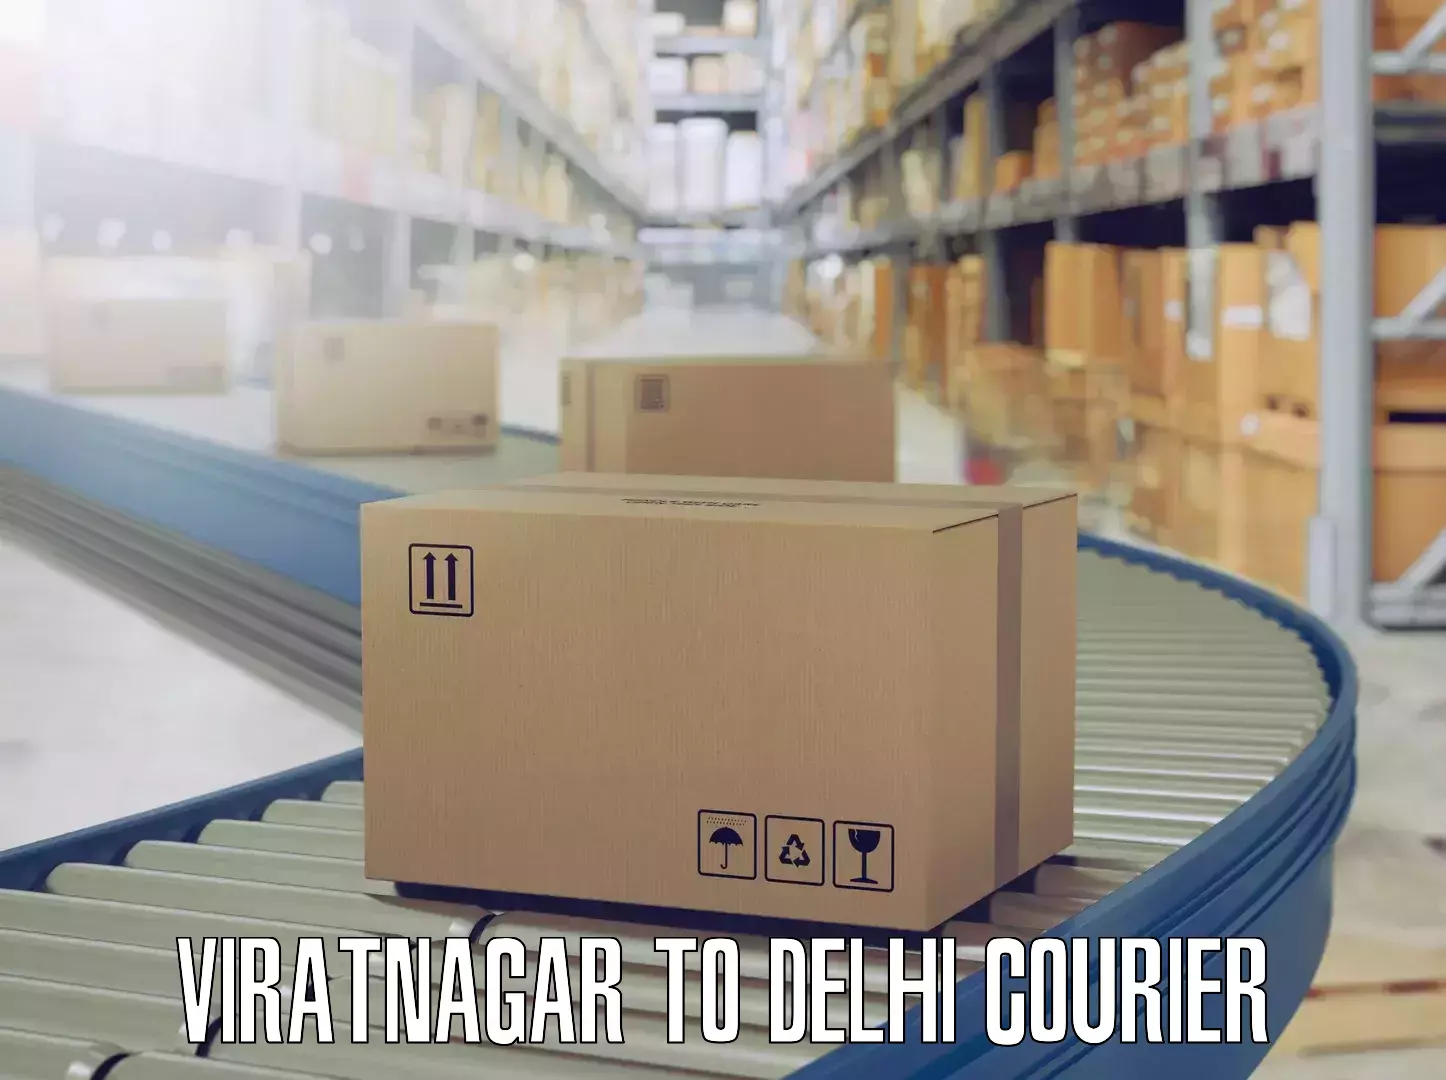 Furniture moving experts Viratnagar to NCR